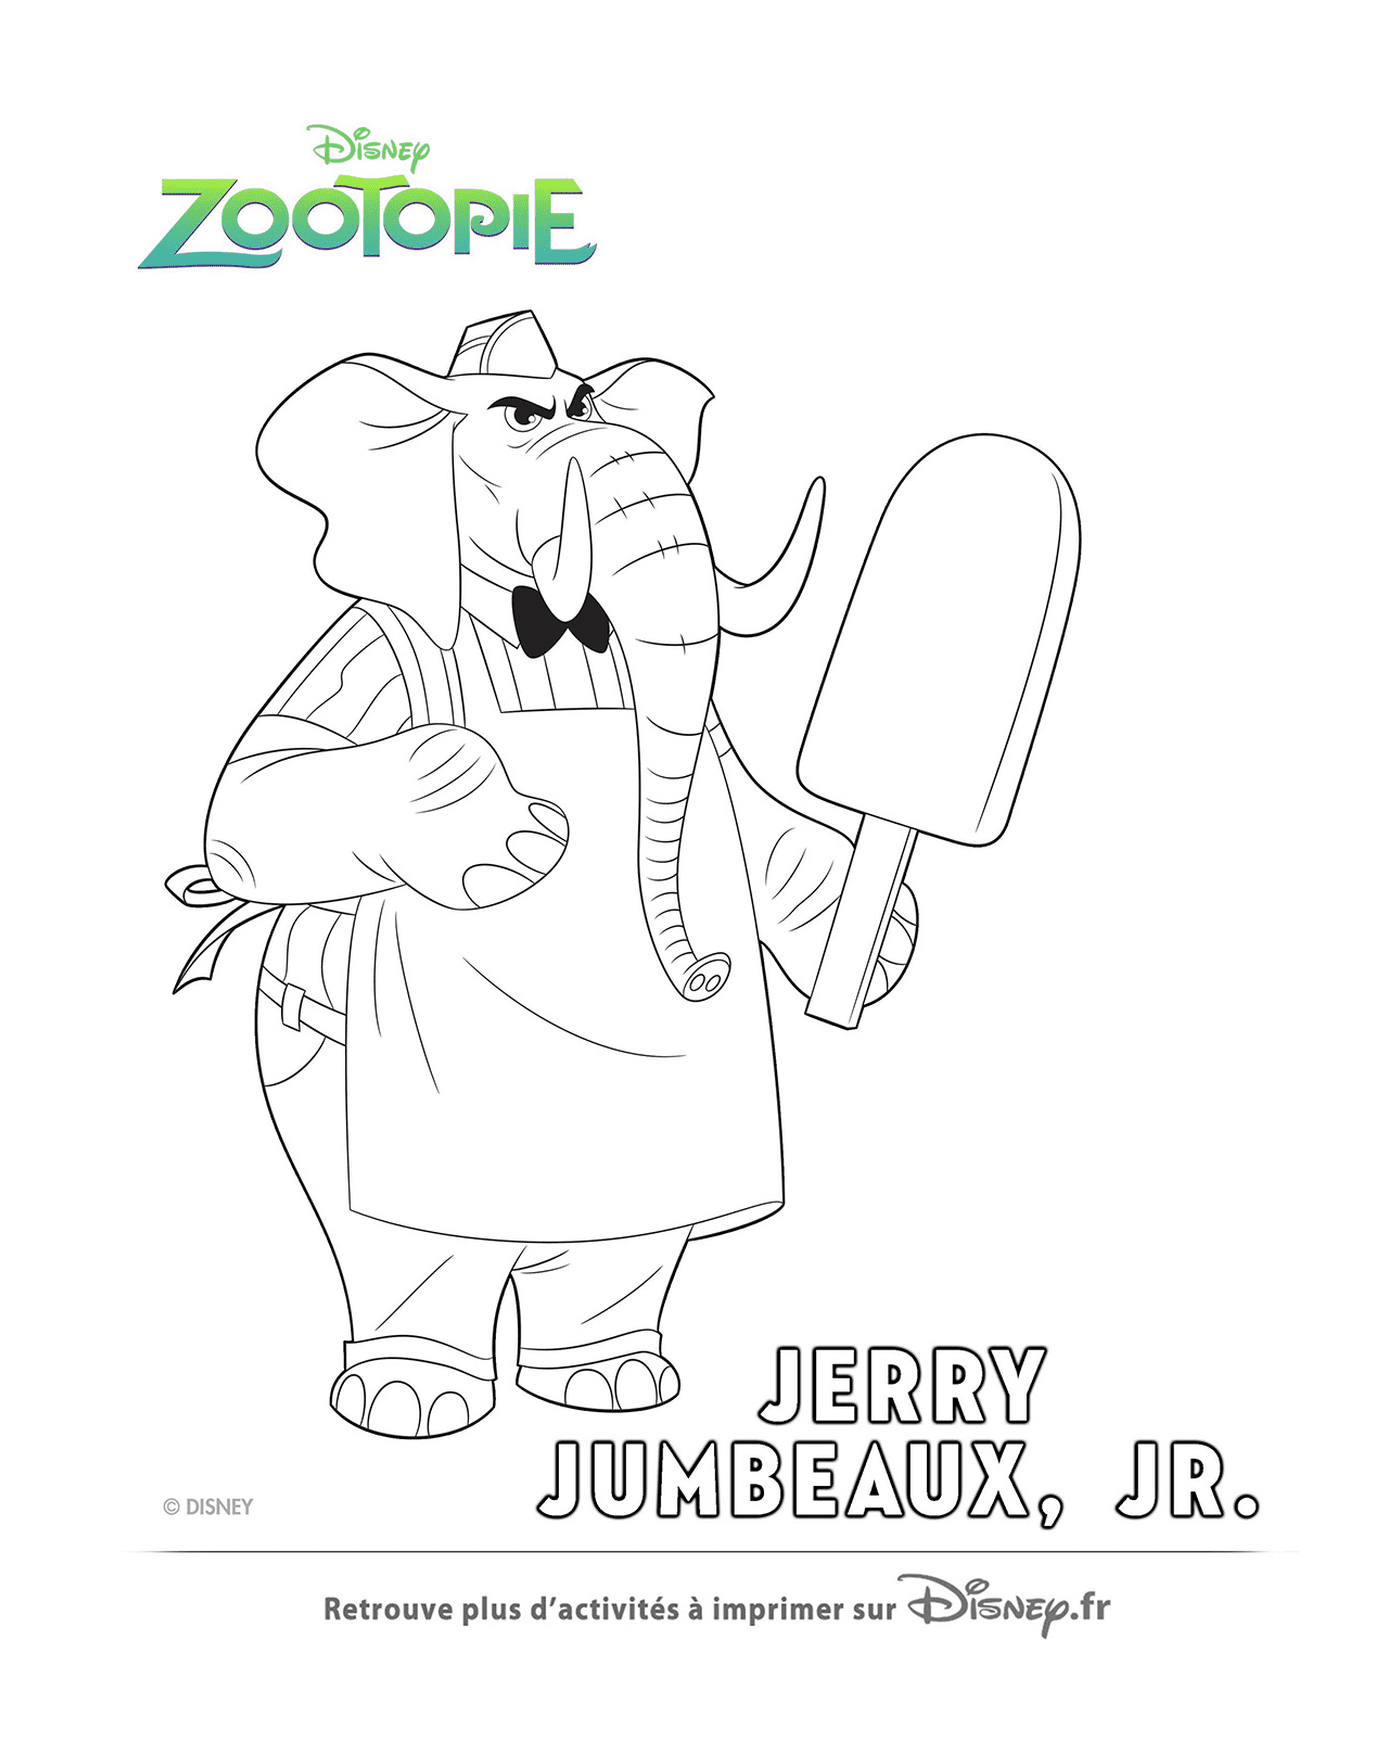   Jerry, le vendeur de glaces de Zootopie 